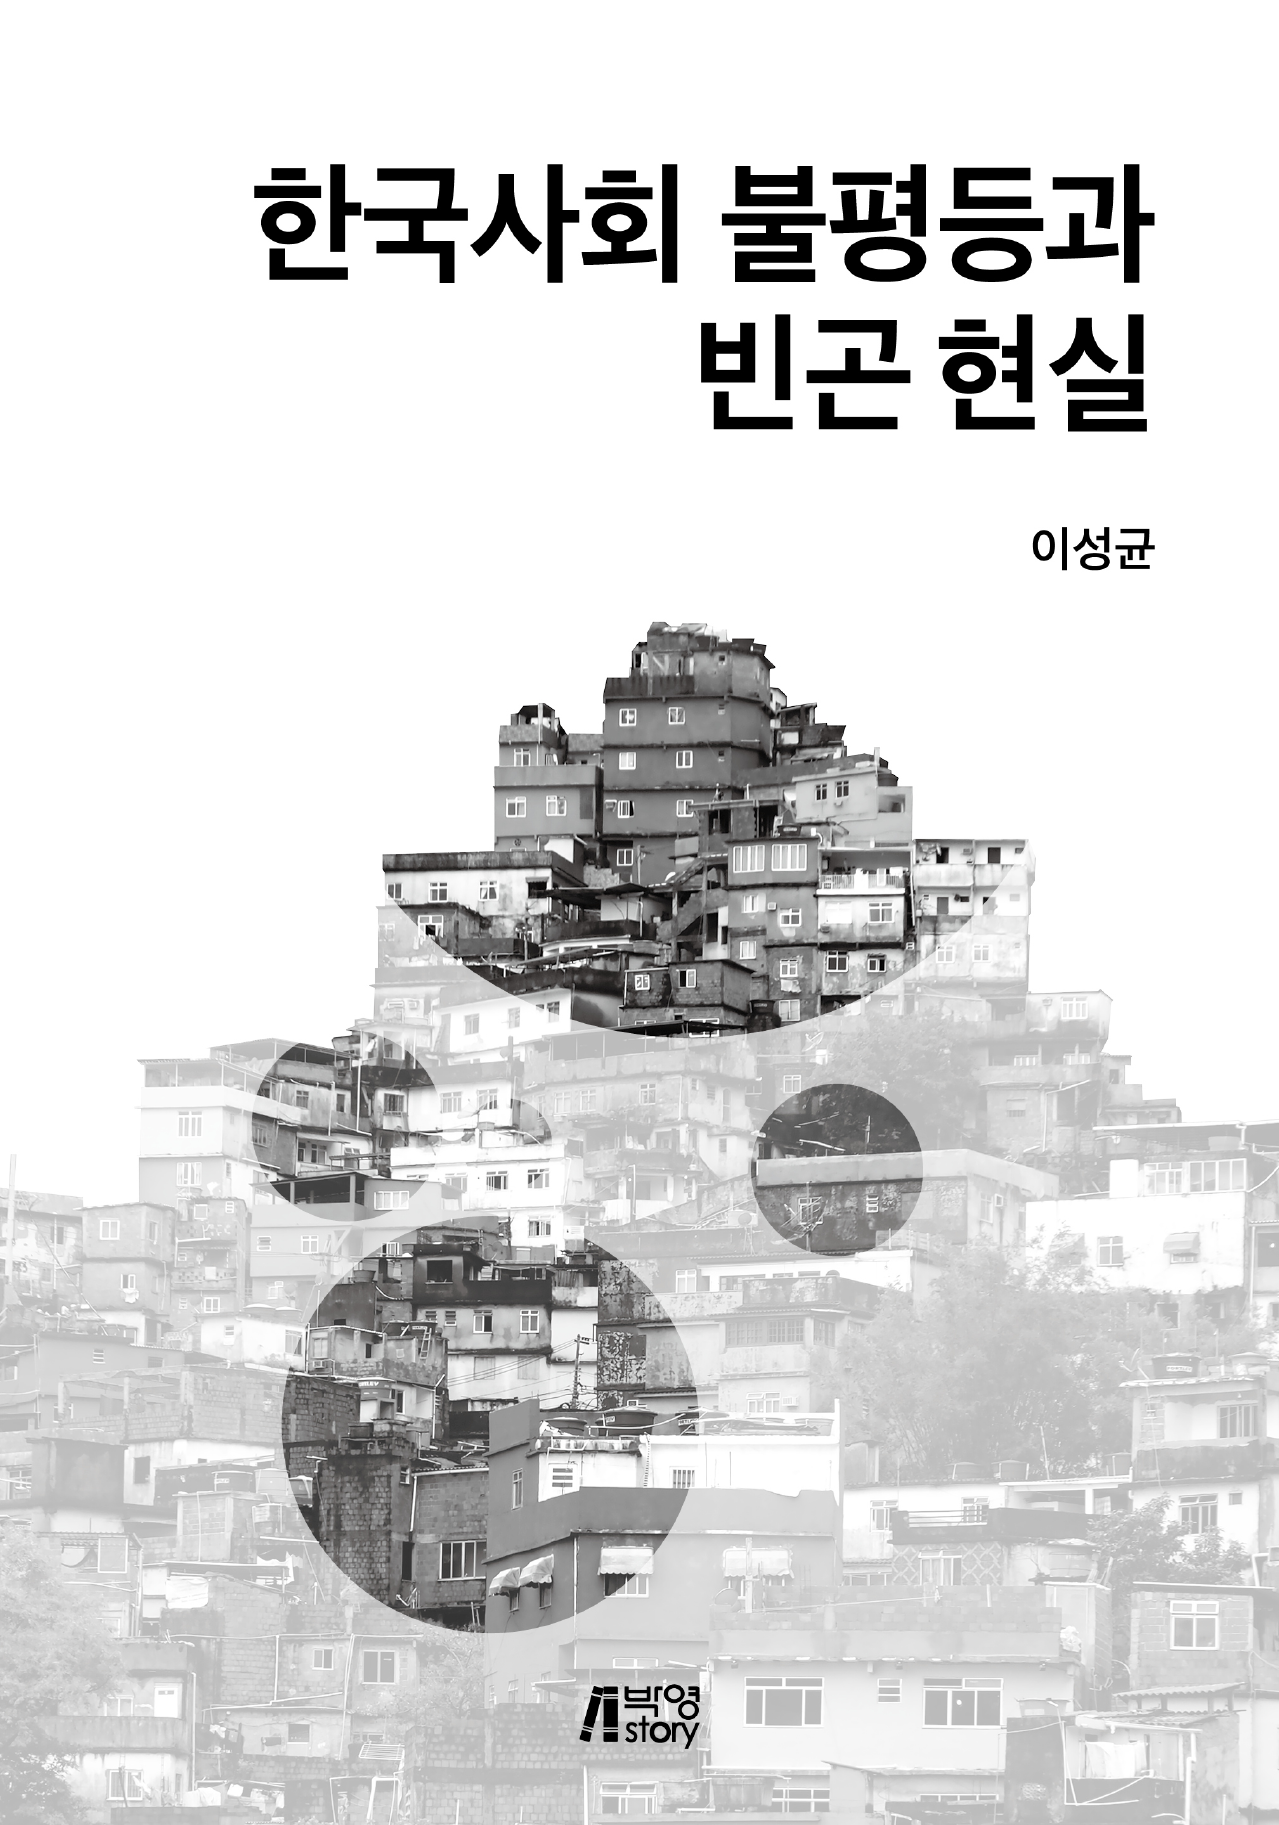 한국사회 불평등과 빈곤 현실